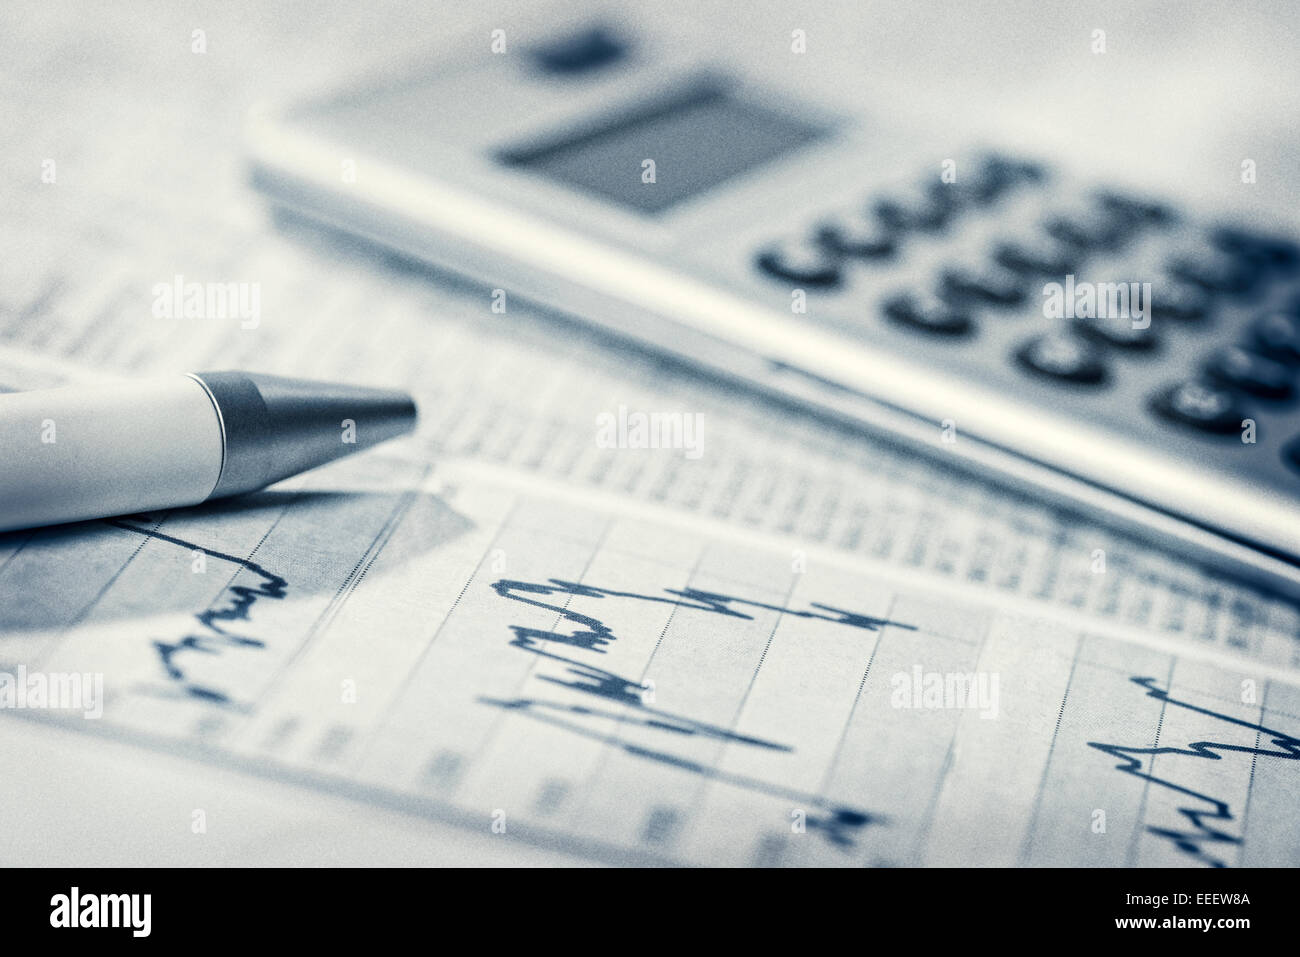 Diagramme mit Marktpreisen, Wechselkurs Tabellen, Stift und Taschenrechner. Stockfoto